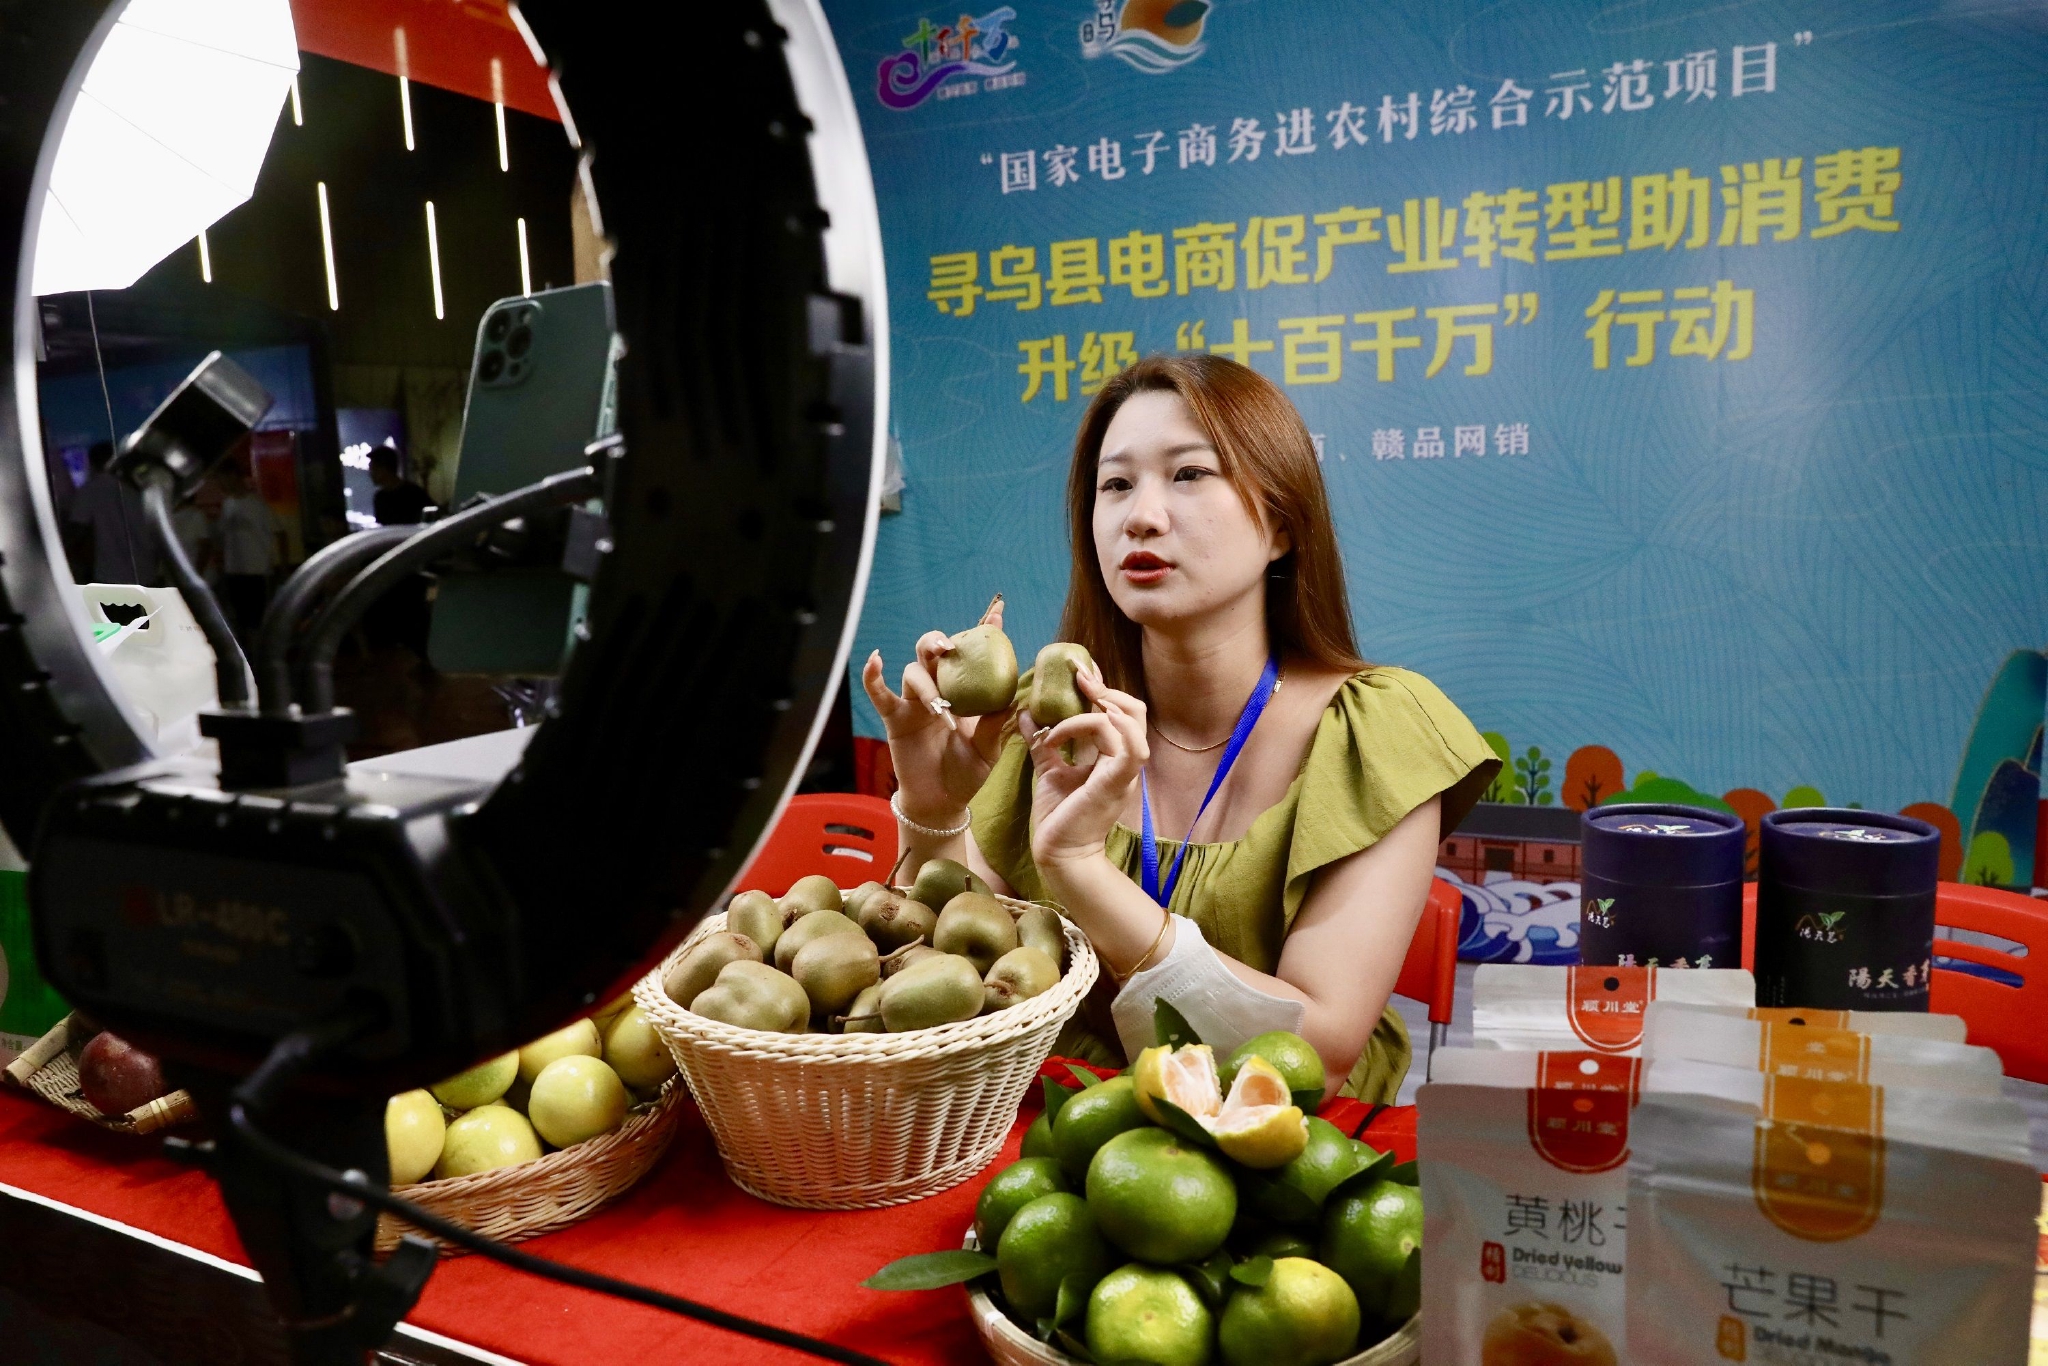 8月27日晚，在江西省寻乌县国际商贸城，一名主播直播在活动现场销售农特产品。中国日报记者 朱兴鑫 摄